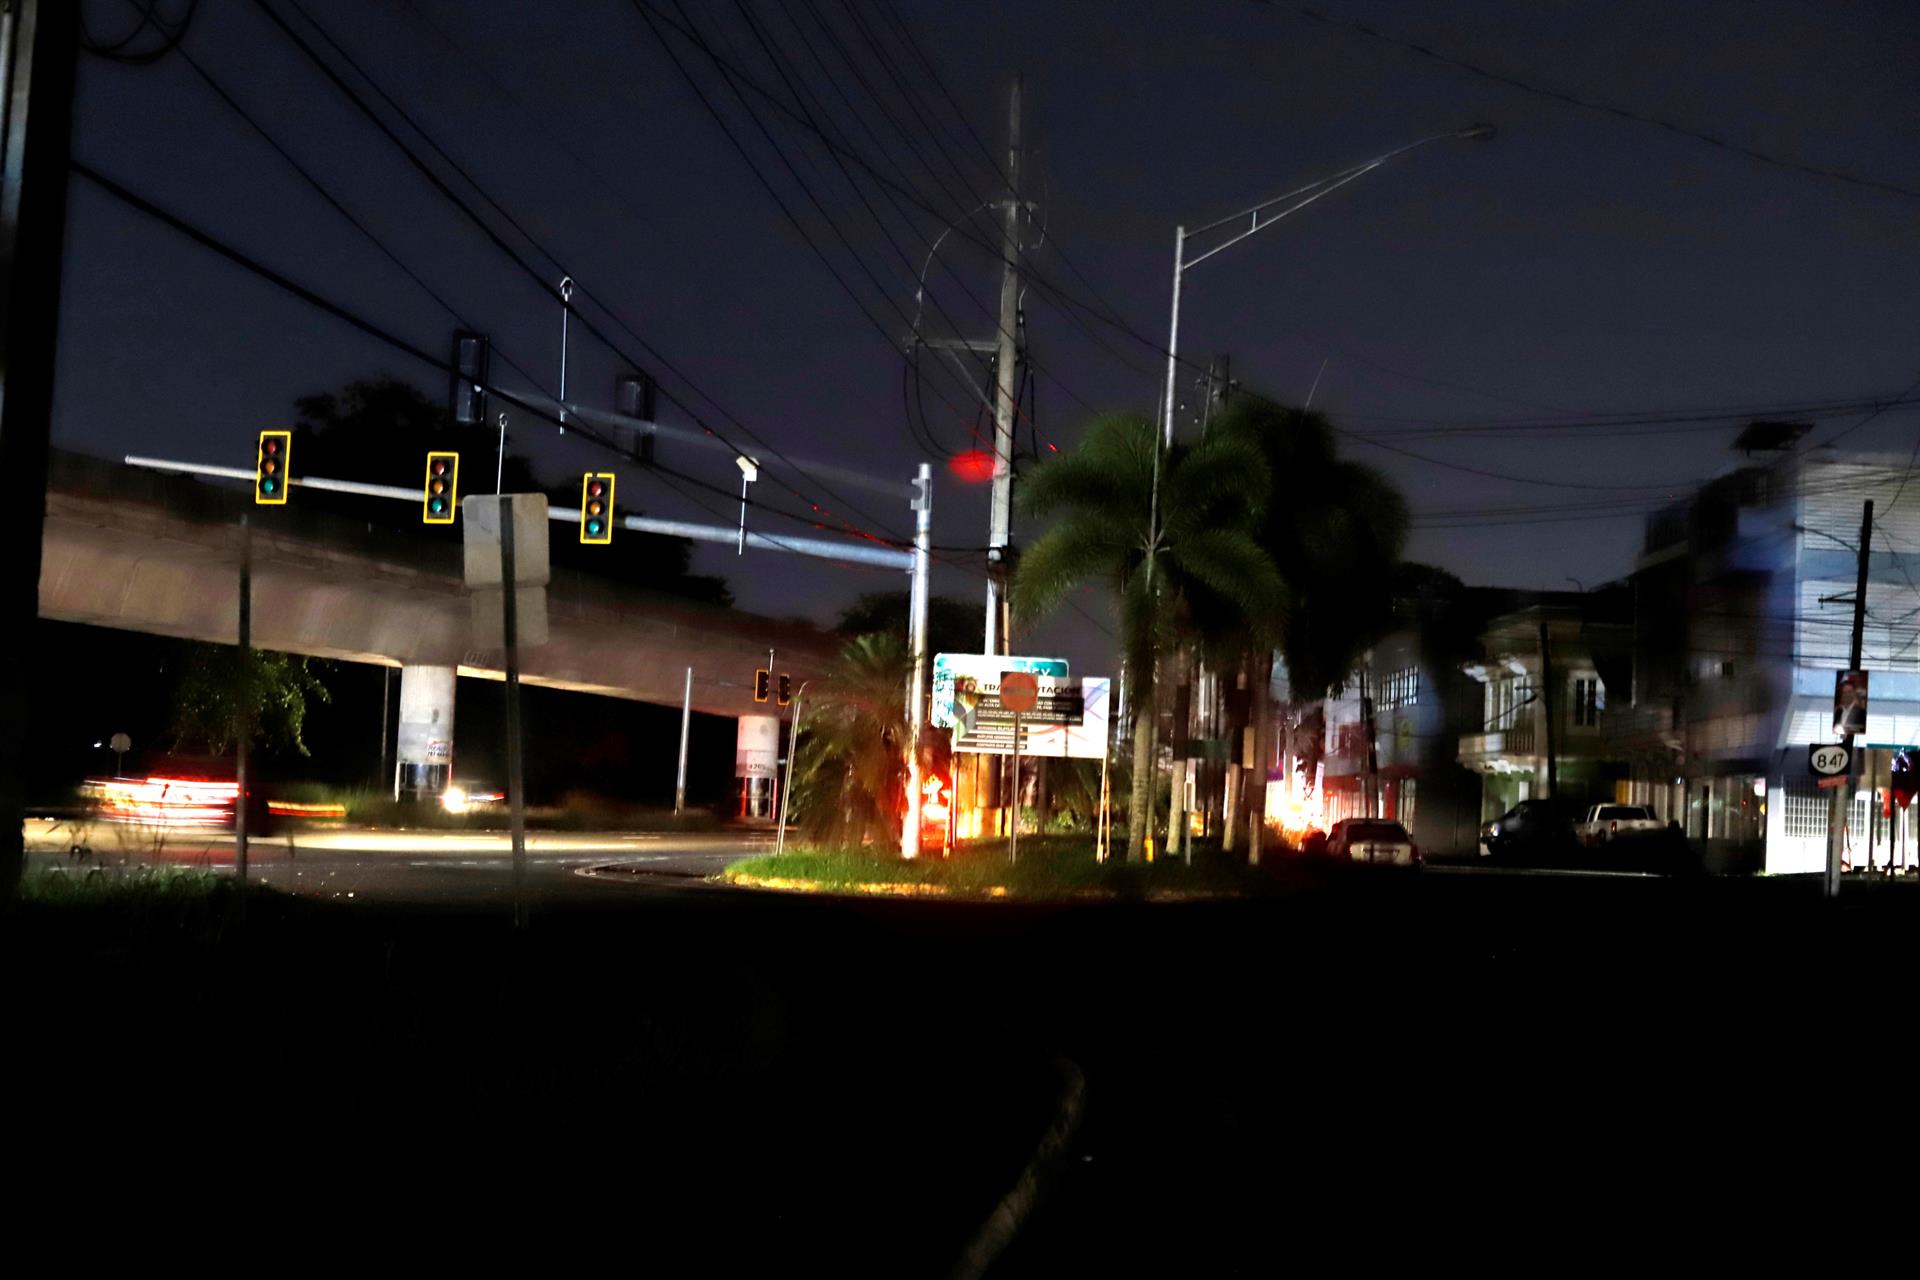 Vista de una calle sin iluminación y sin semáforos funcionando en Puerto Rico. EFE/Thais llorca
